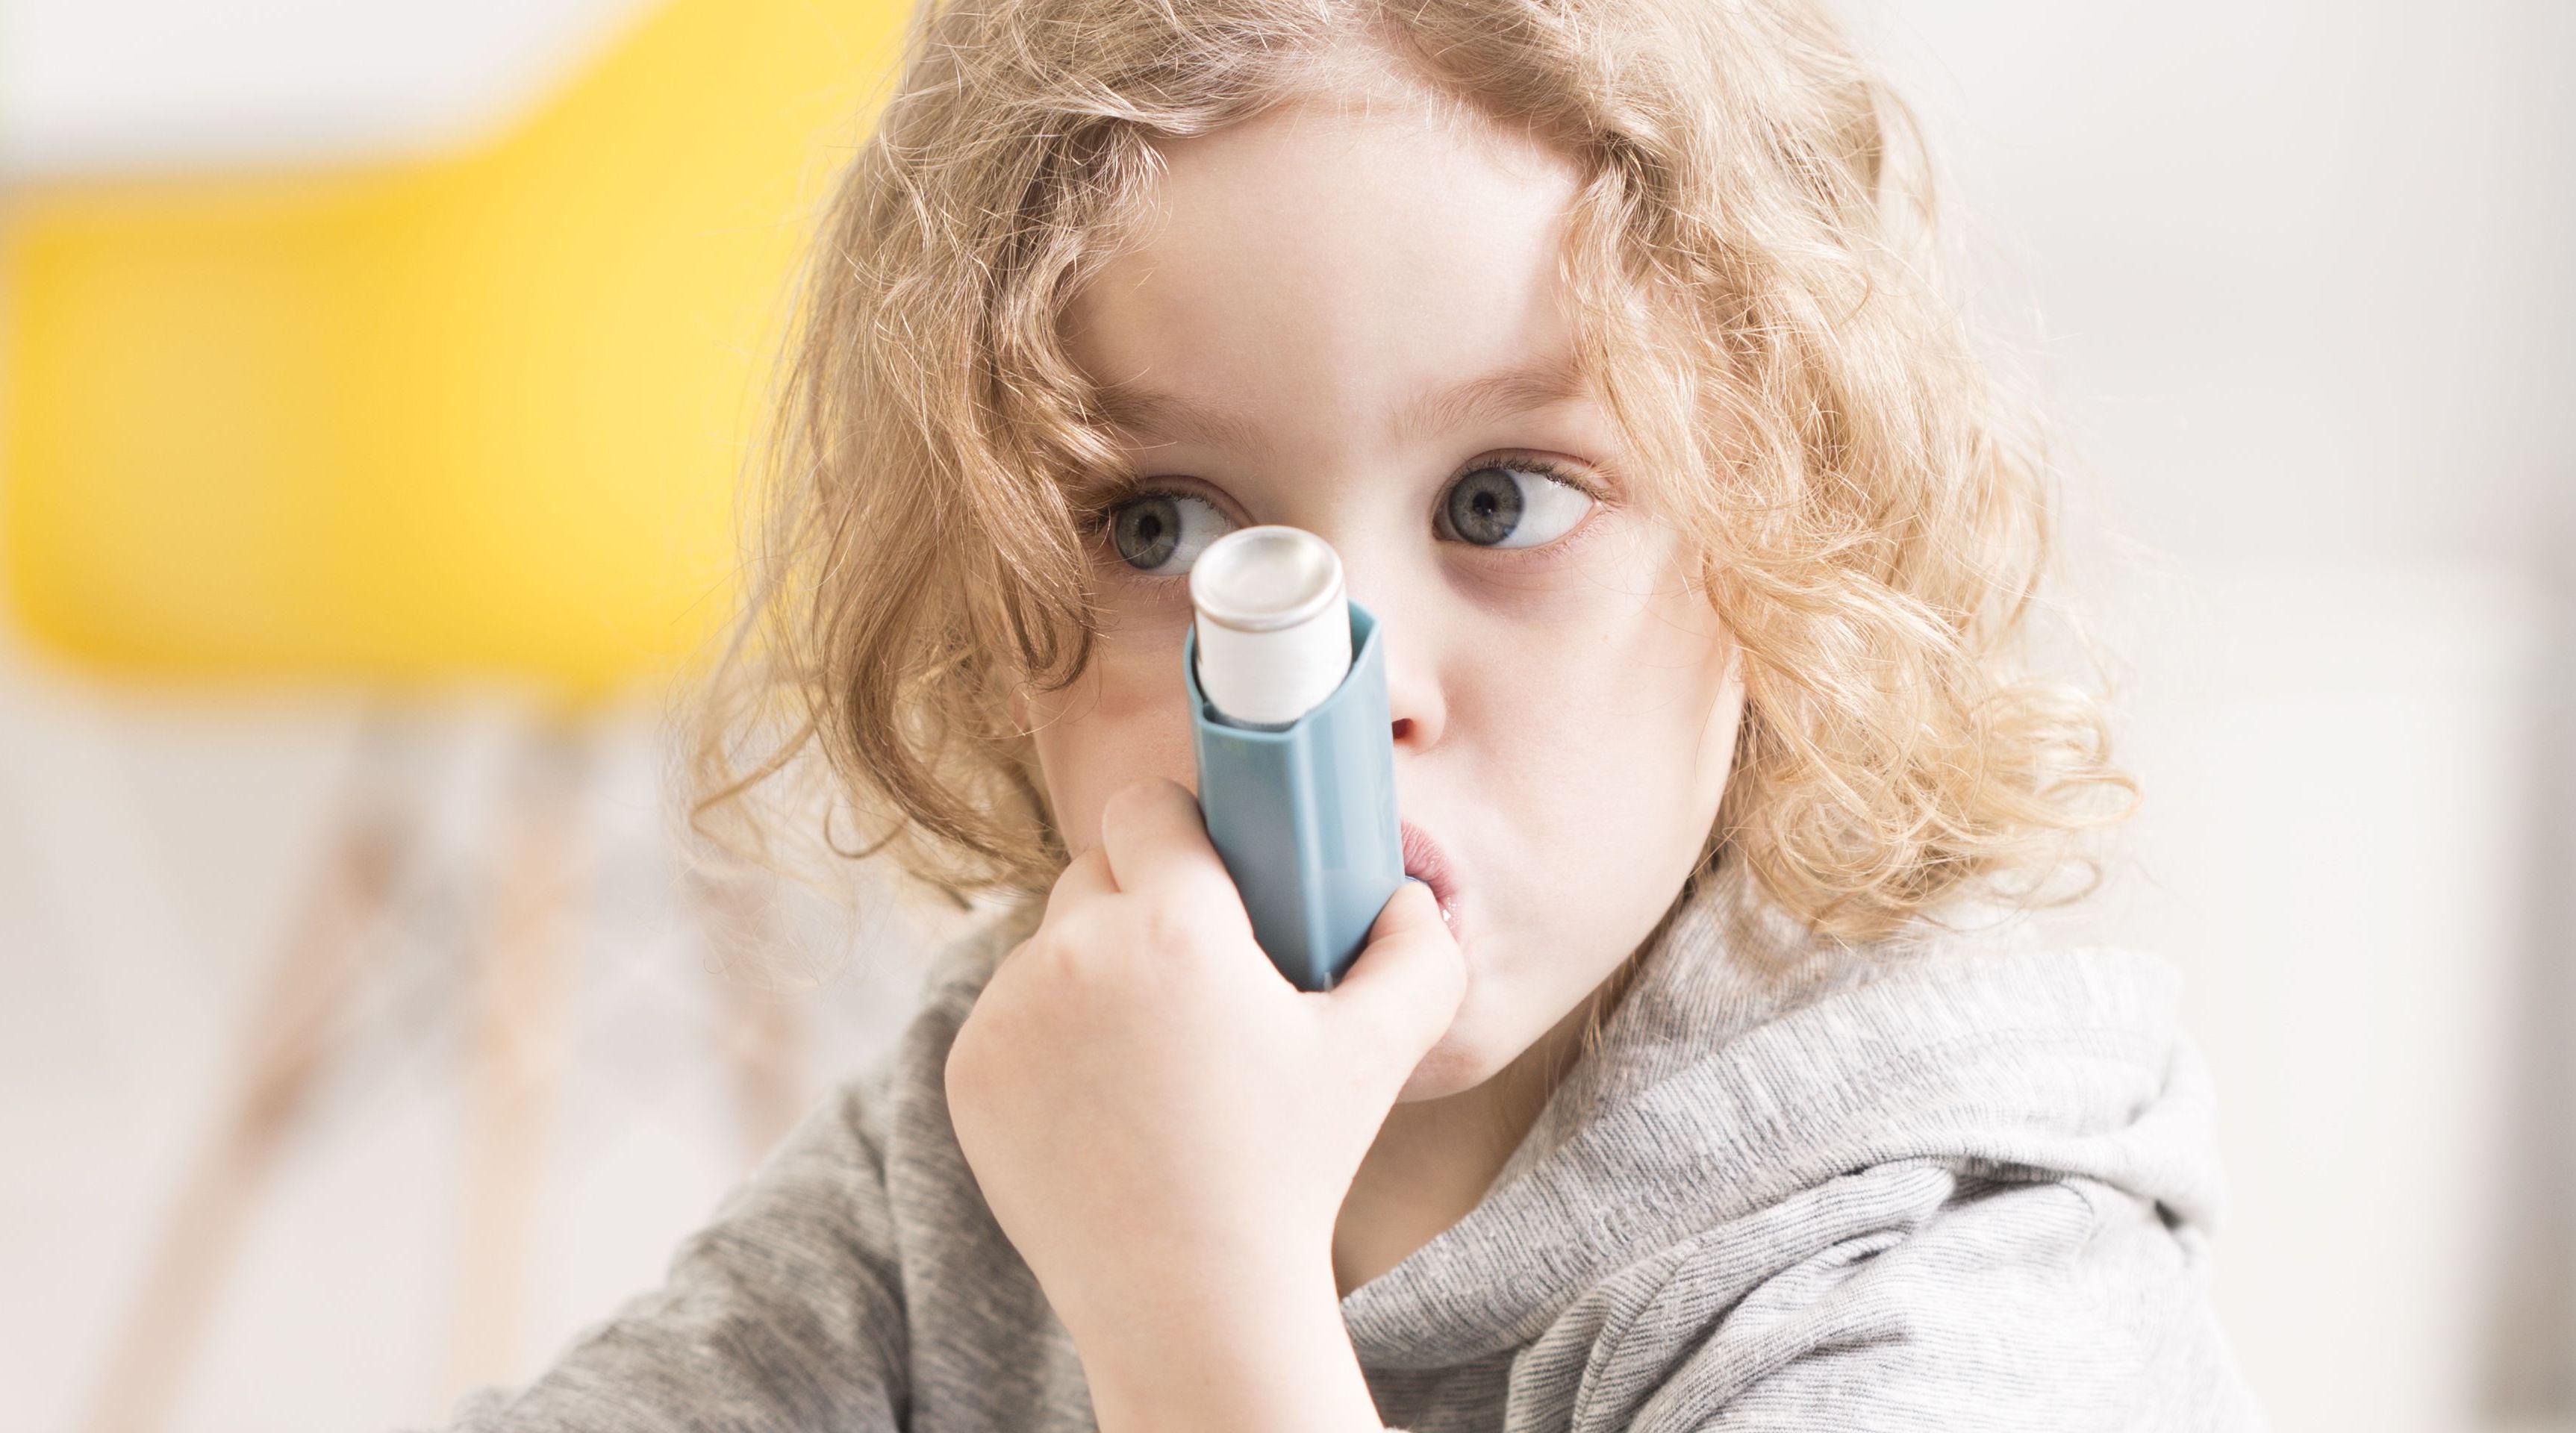 Шесть мифов о бронхиальной астме